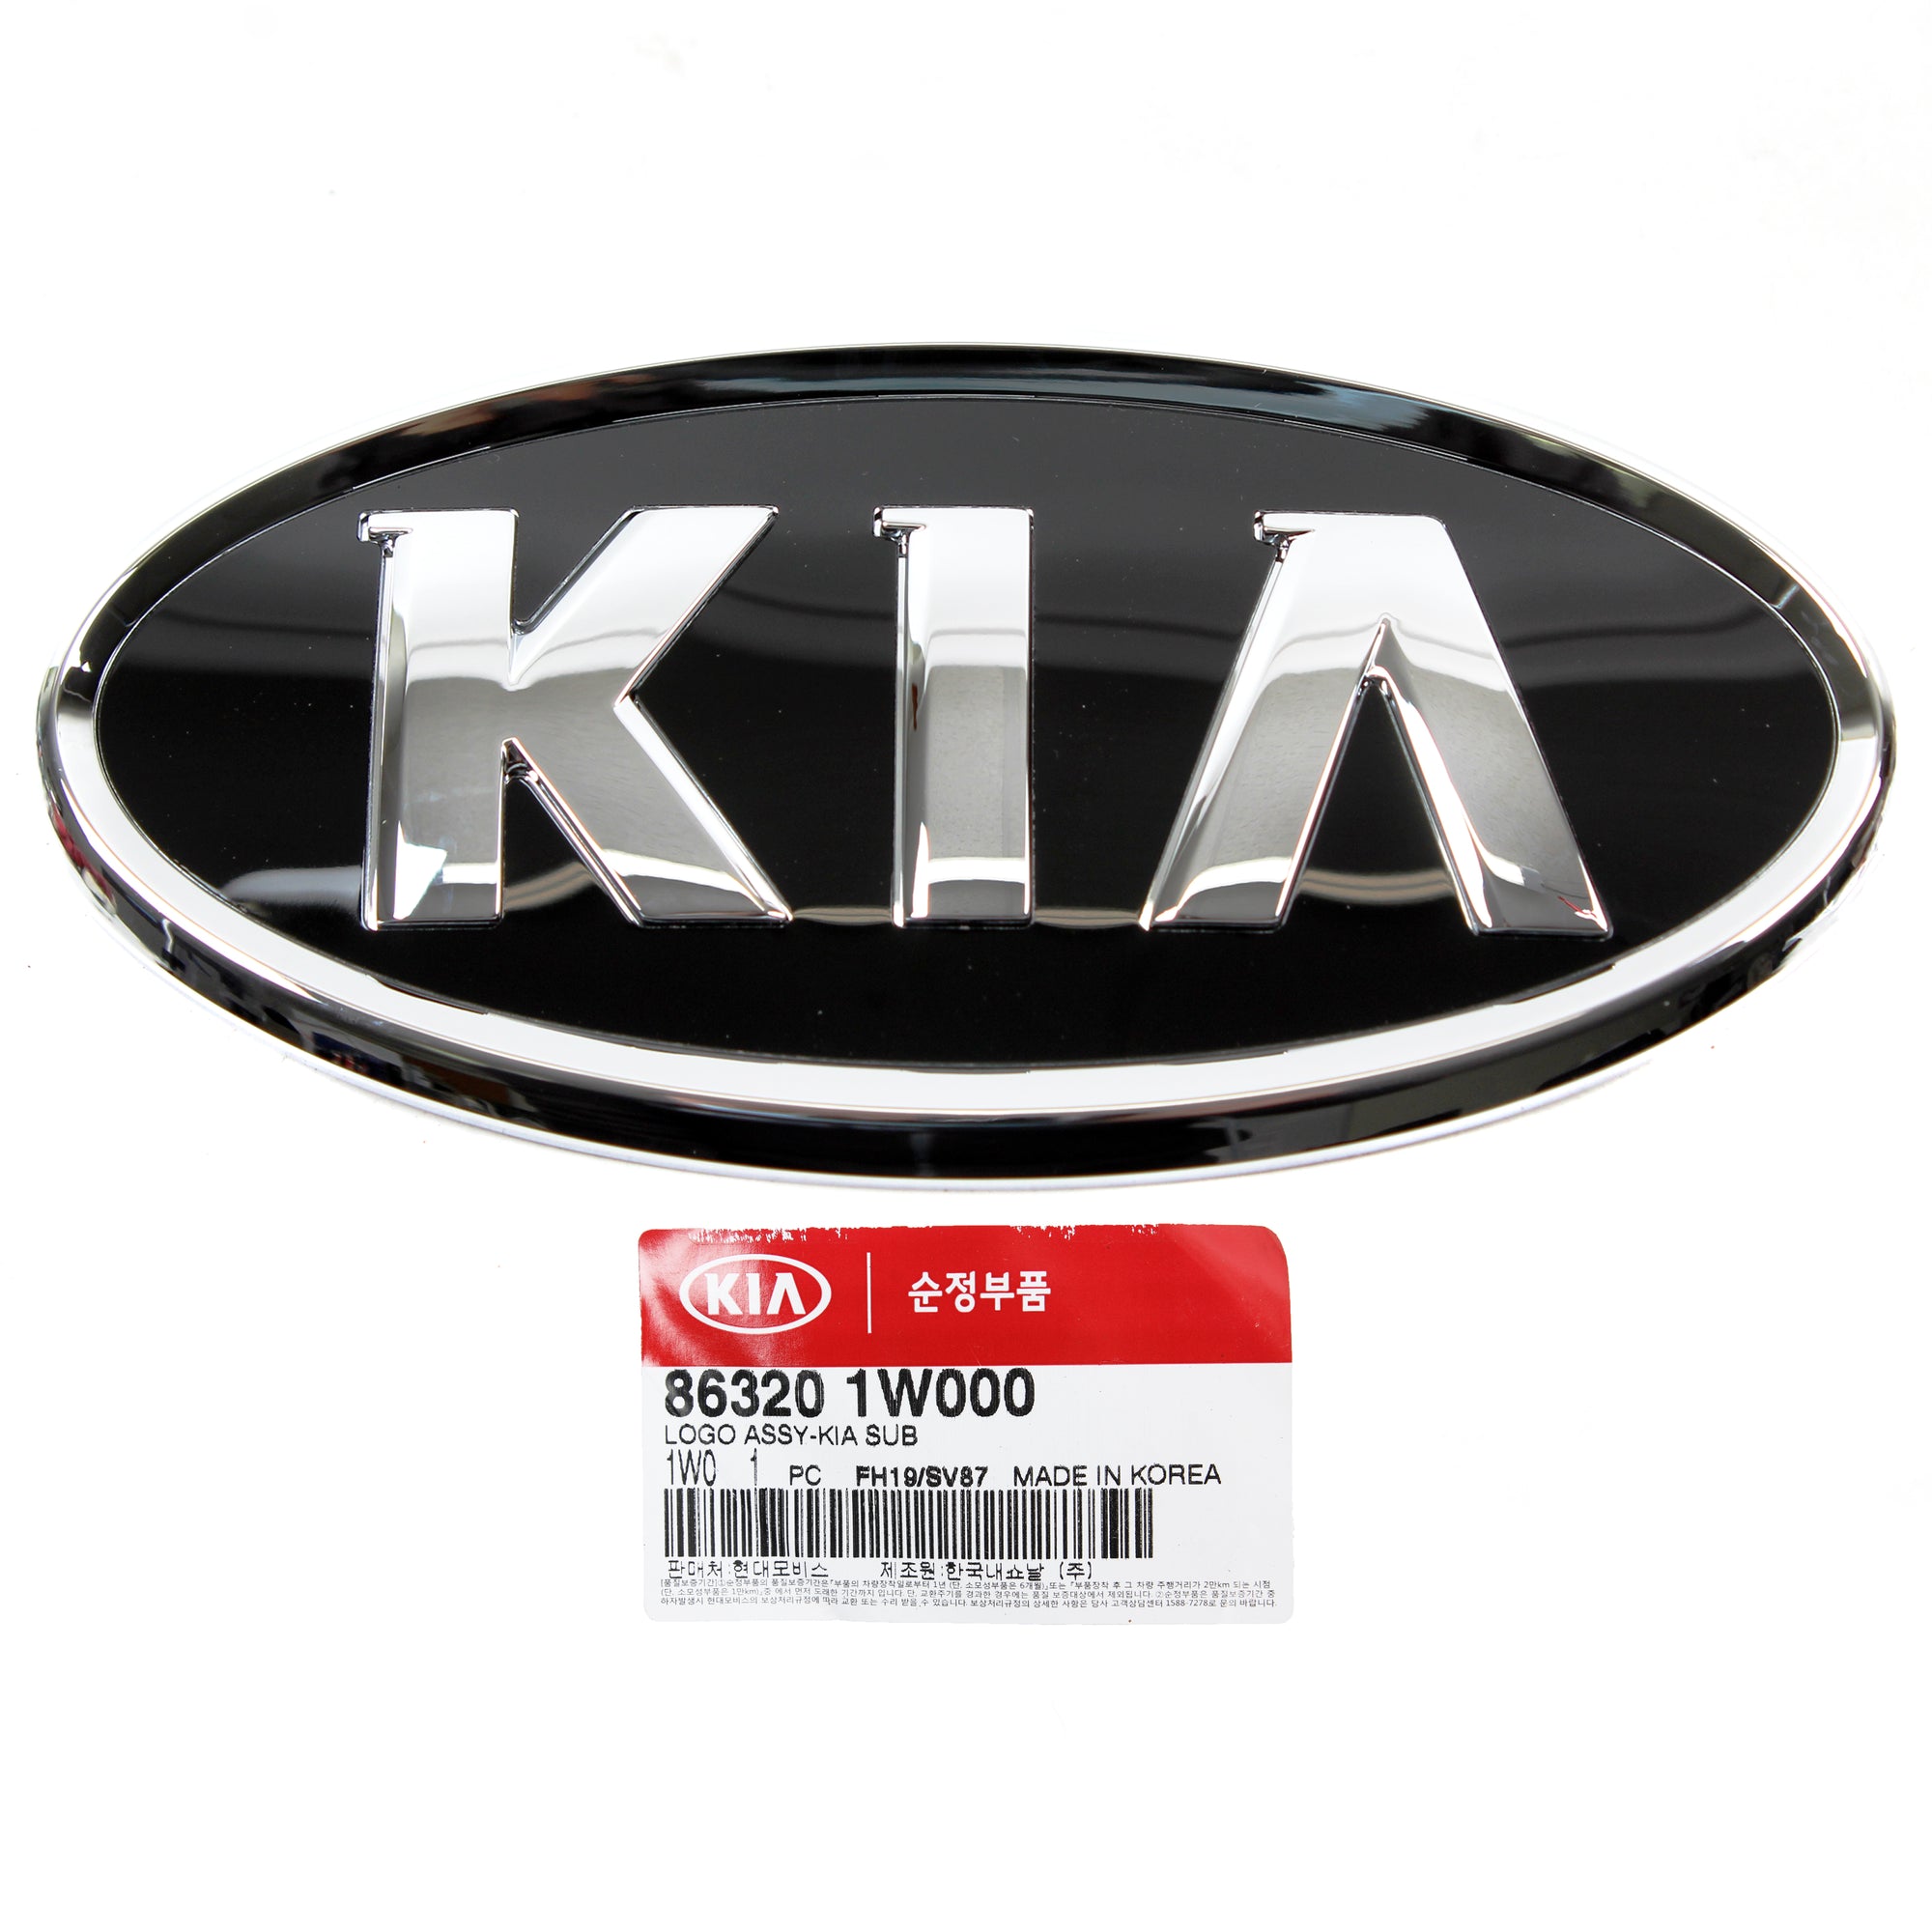 GENUINE Front Grille KIA Logo Emblem for 2012-2015 Kia Rio Sedan 863201W000